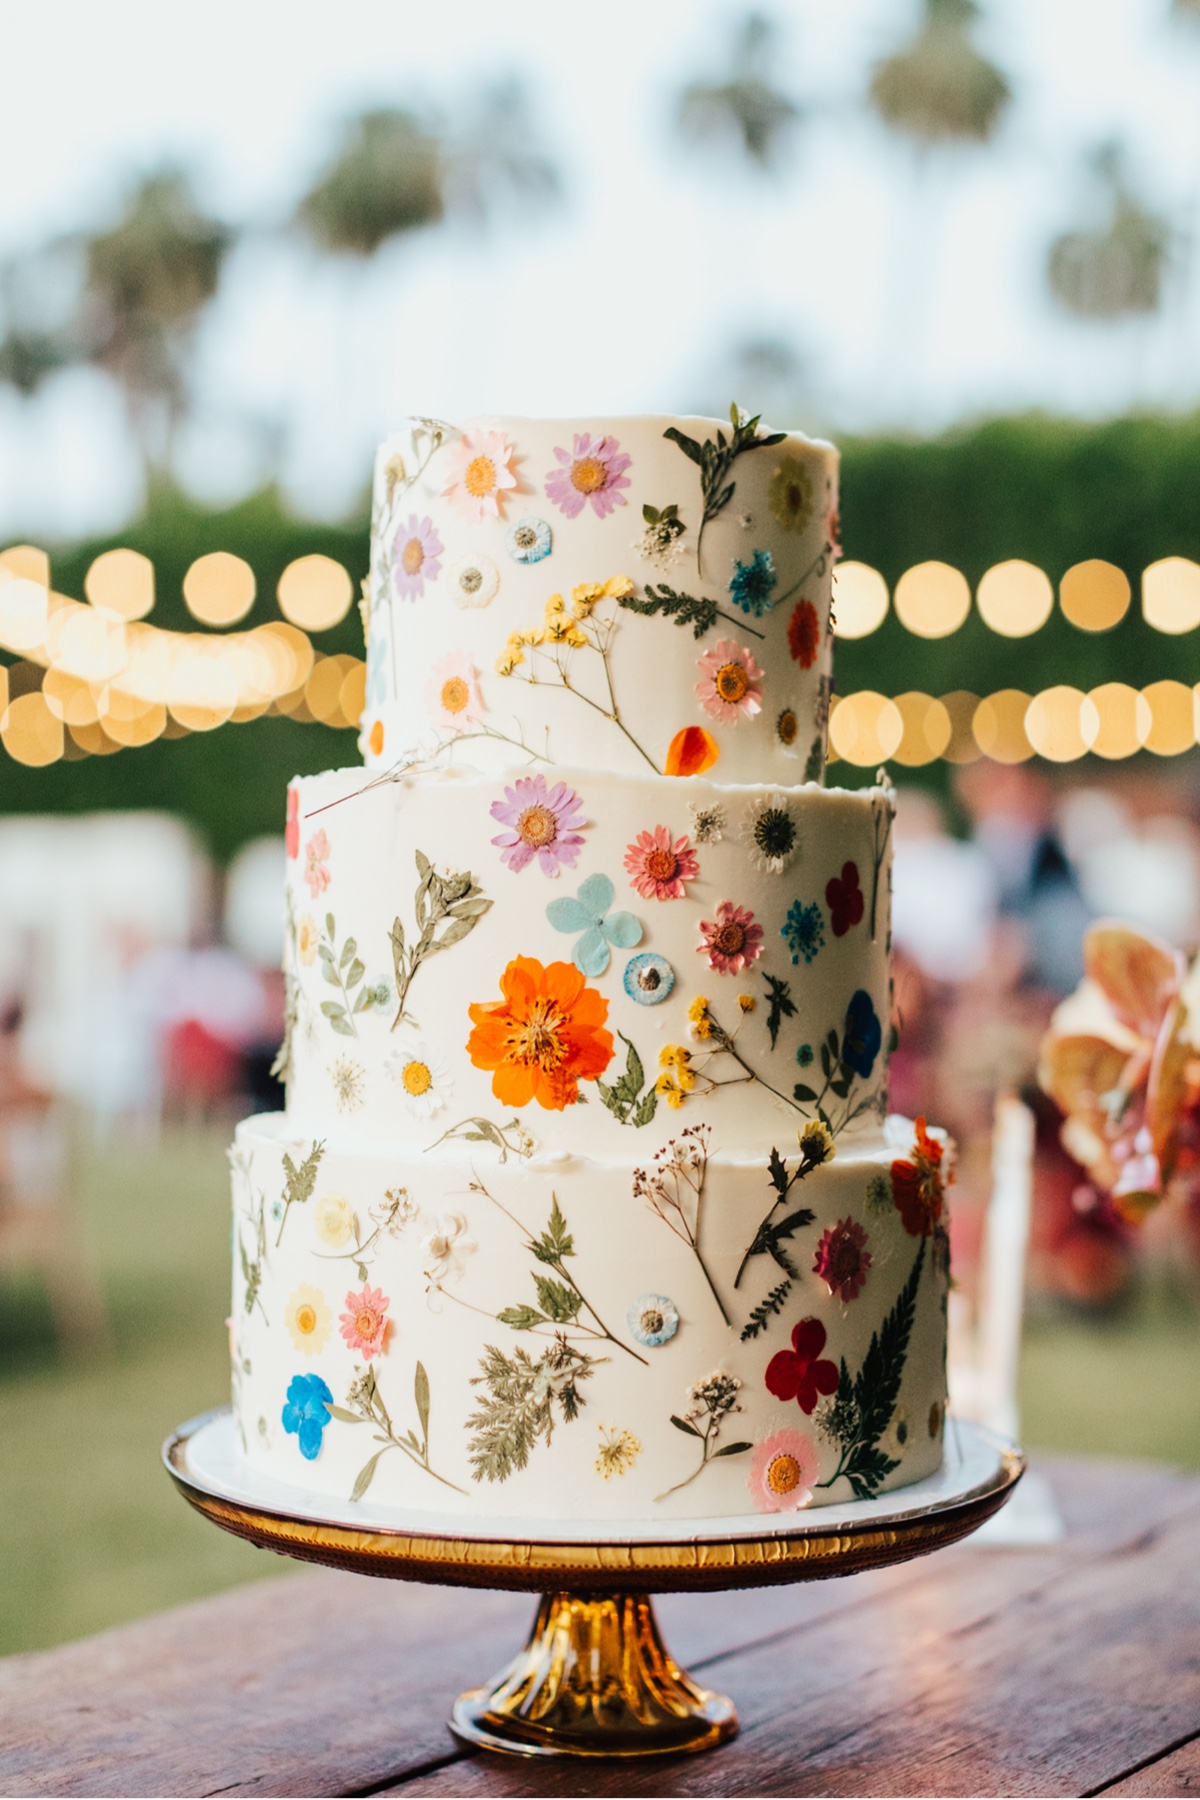 exquisite dessert wedding cake